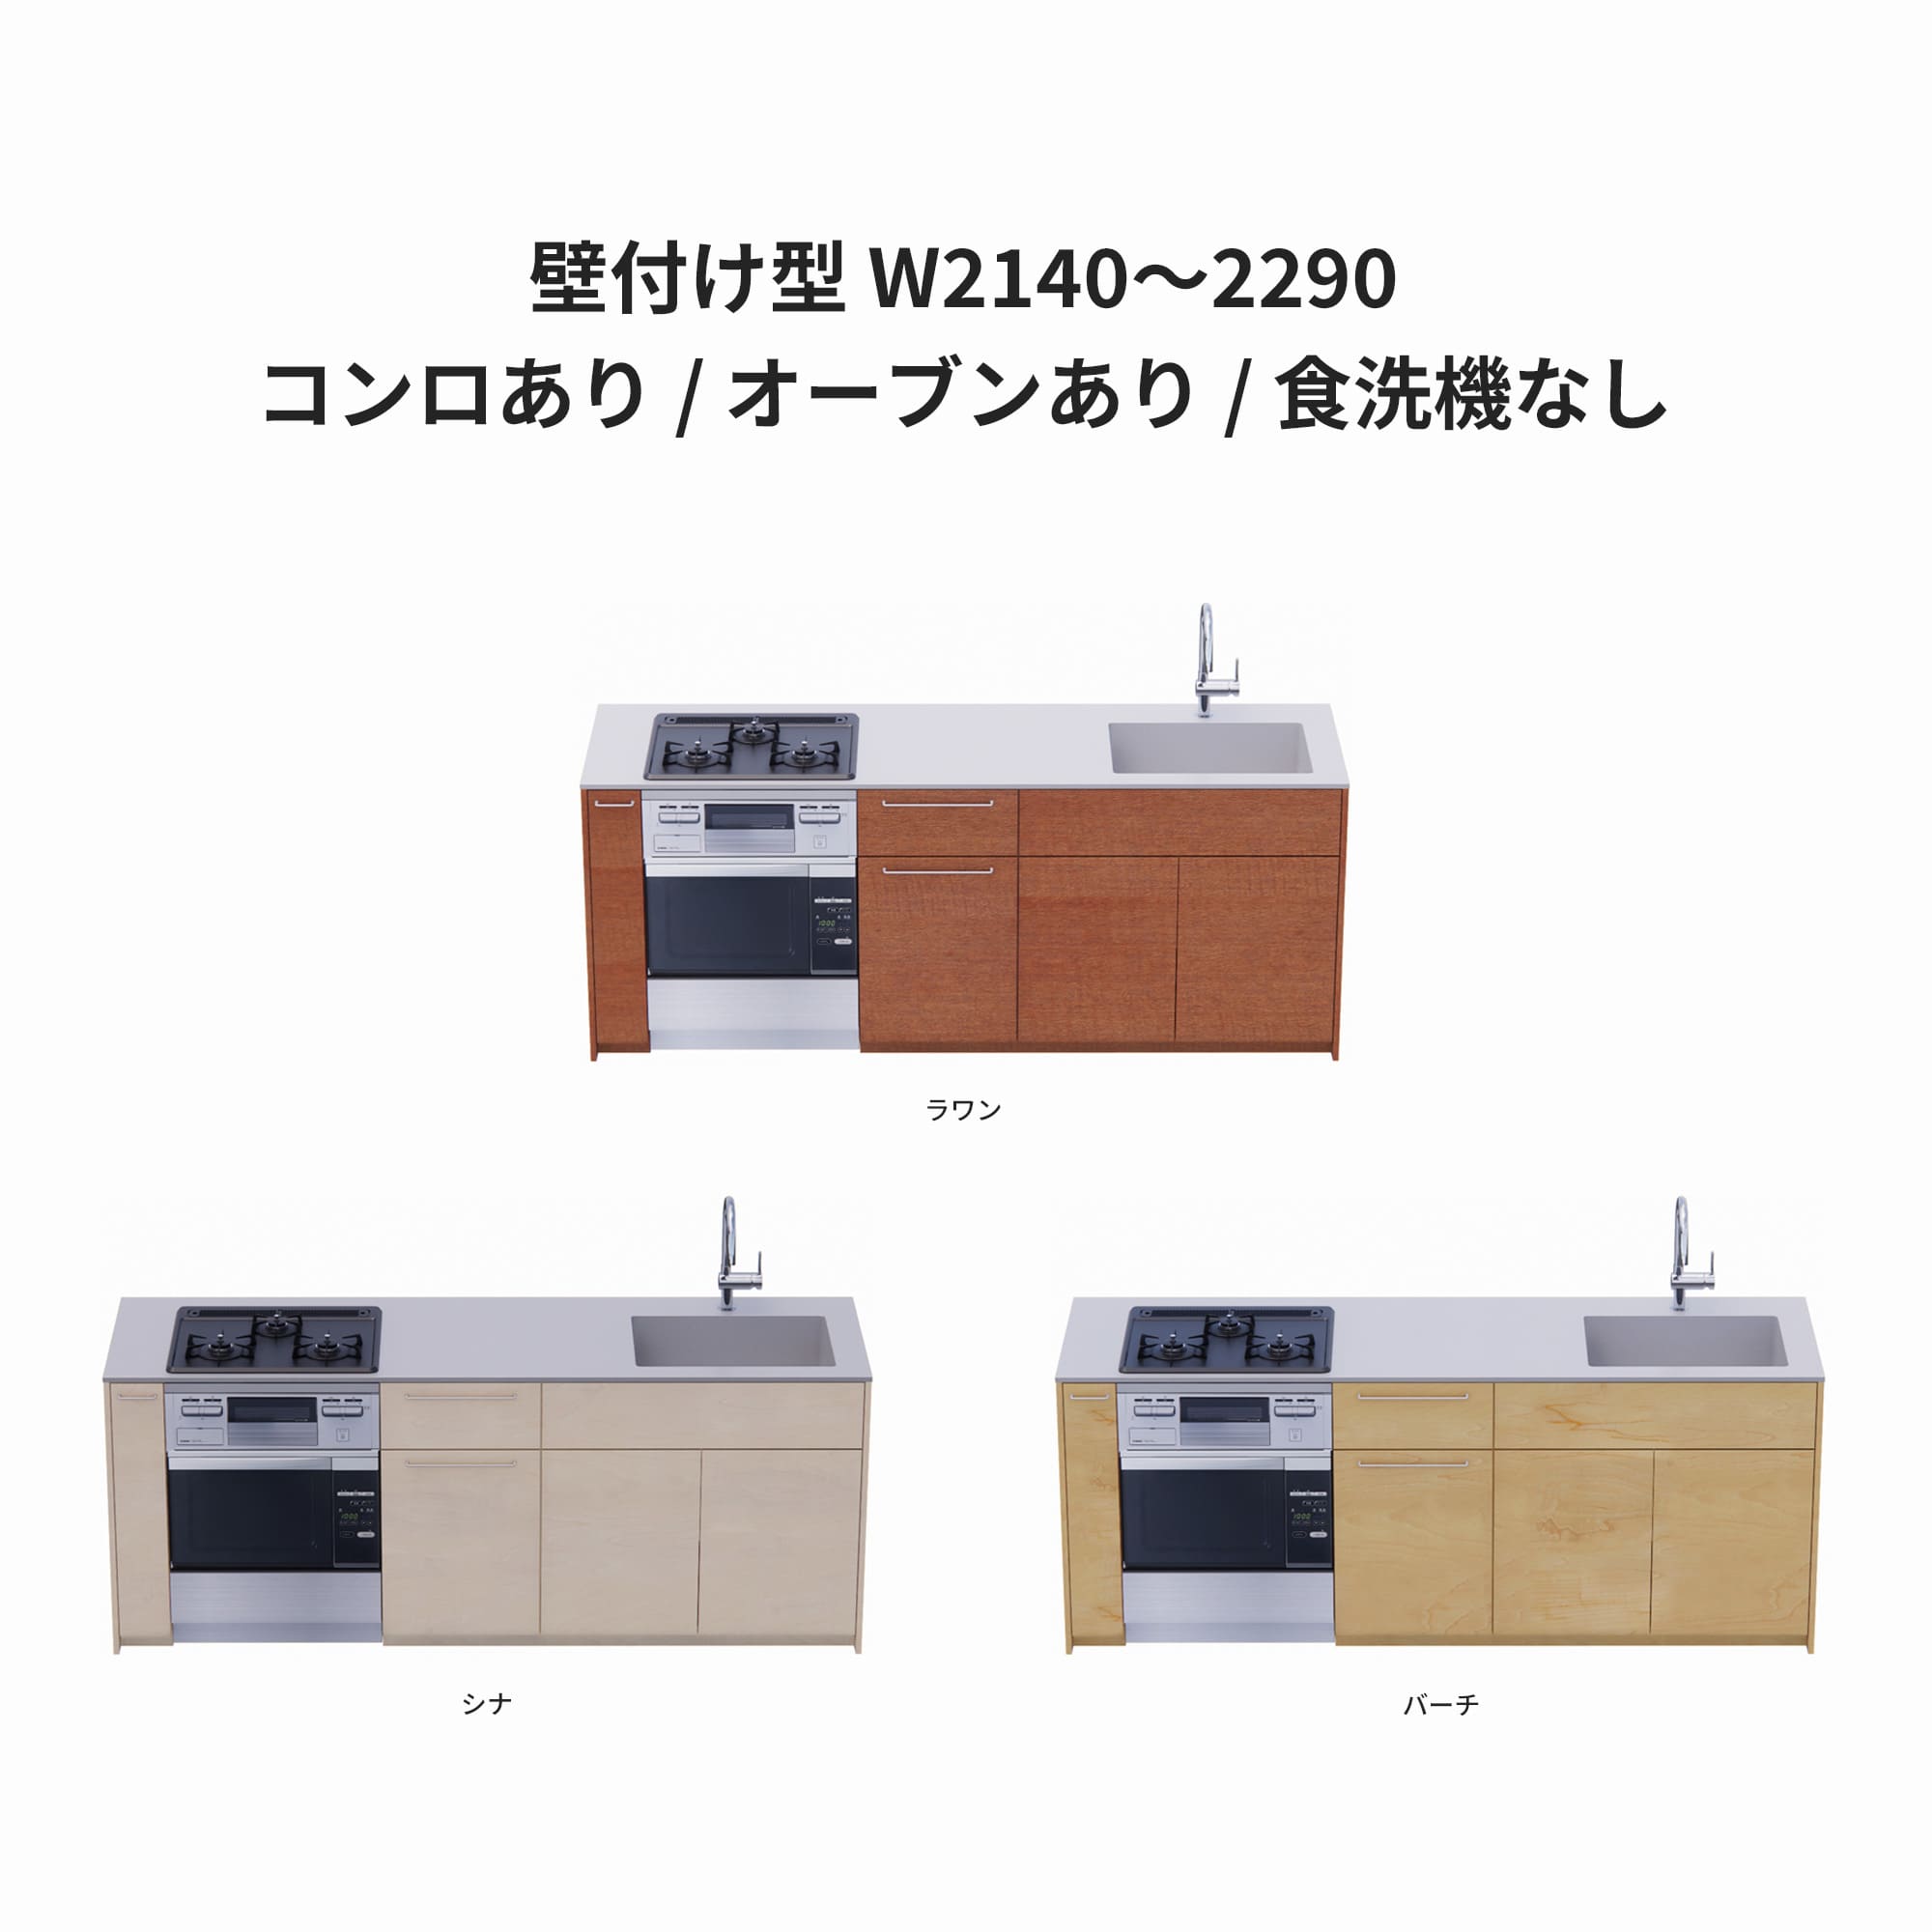 木製システムキッチン 壁付け型 W2140～2290・コンロあり / オーブンあり / 食洗機なし KB-KC022-19-G183 ラワン・シナ・バーチが選択できます